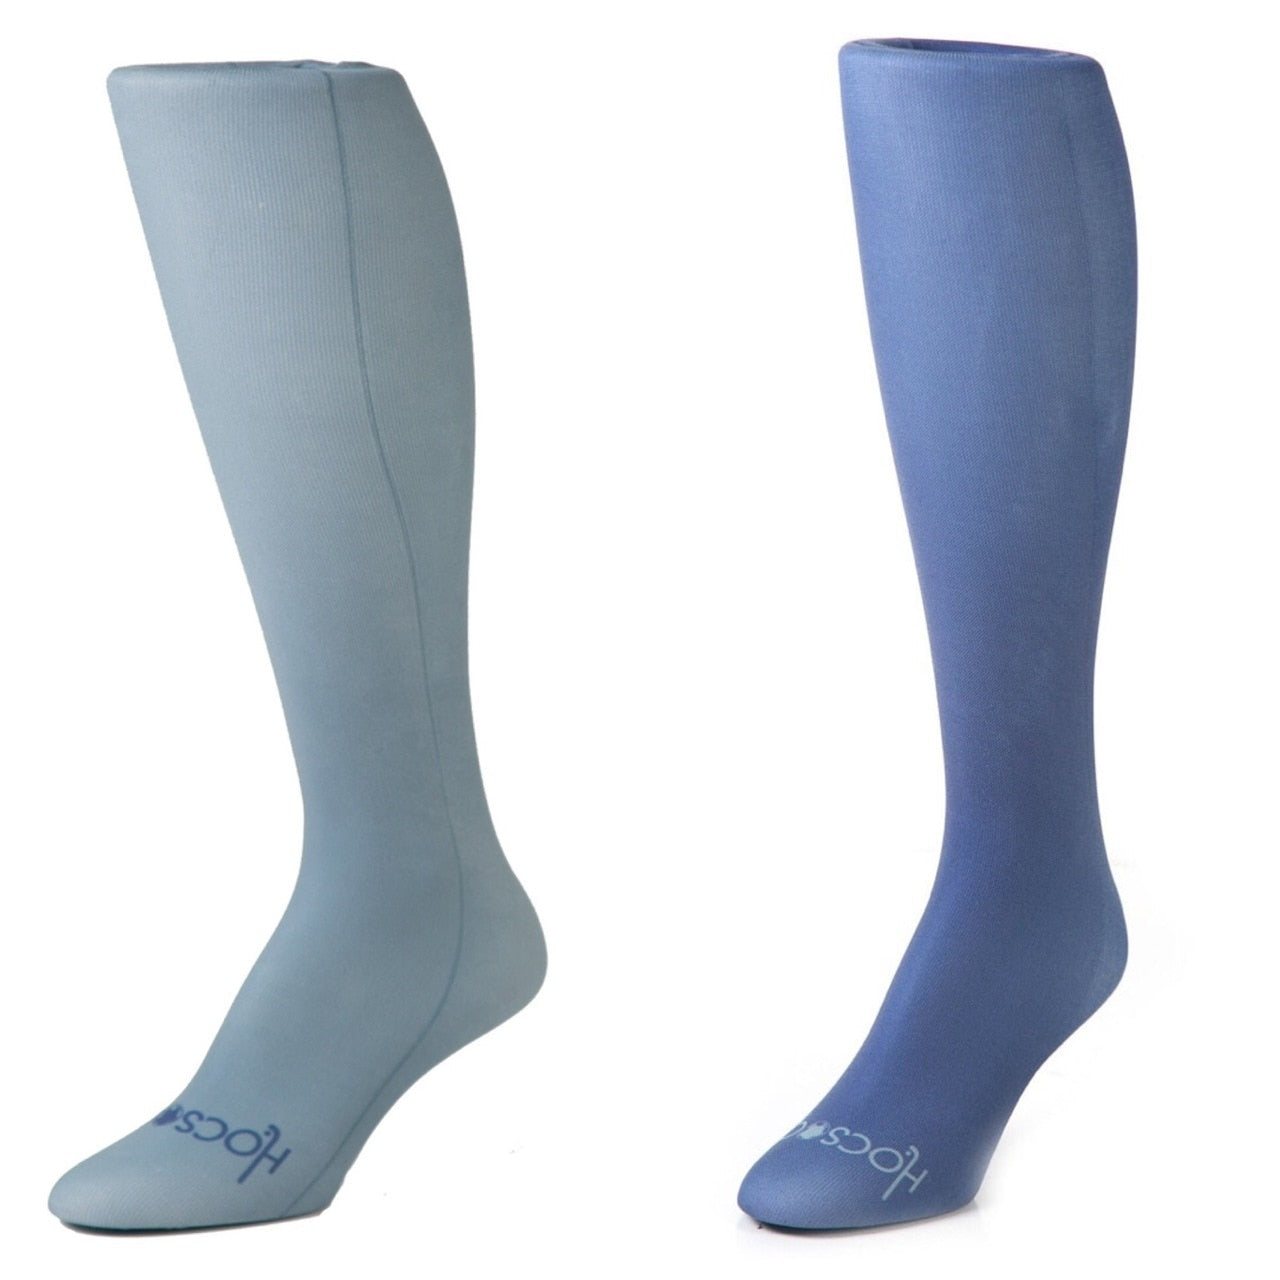 Hocsocx Gray & Navy Performance Liner Sport Socks